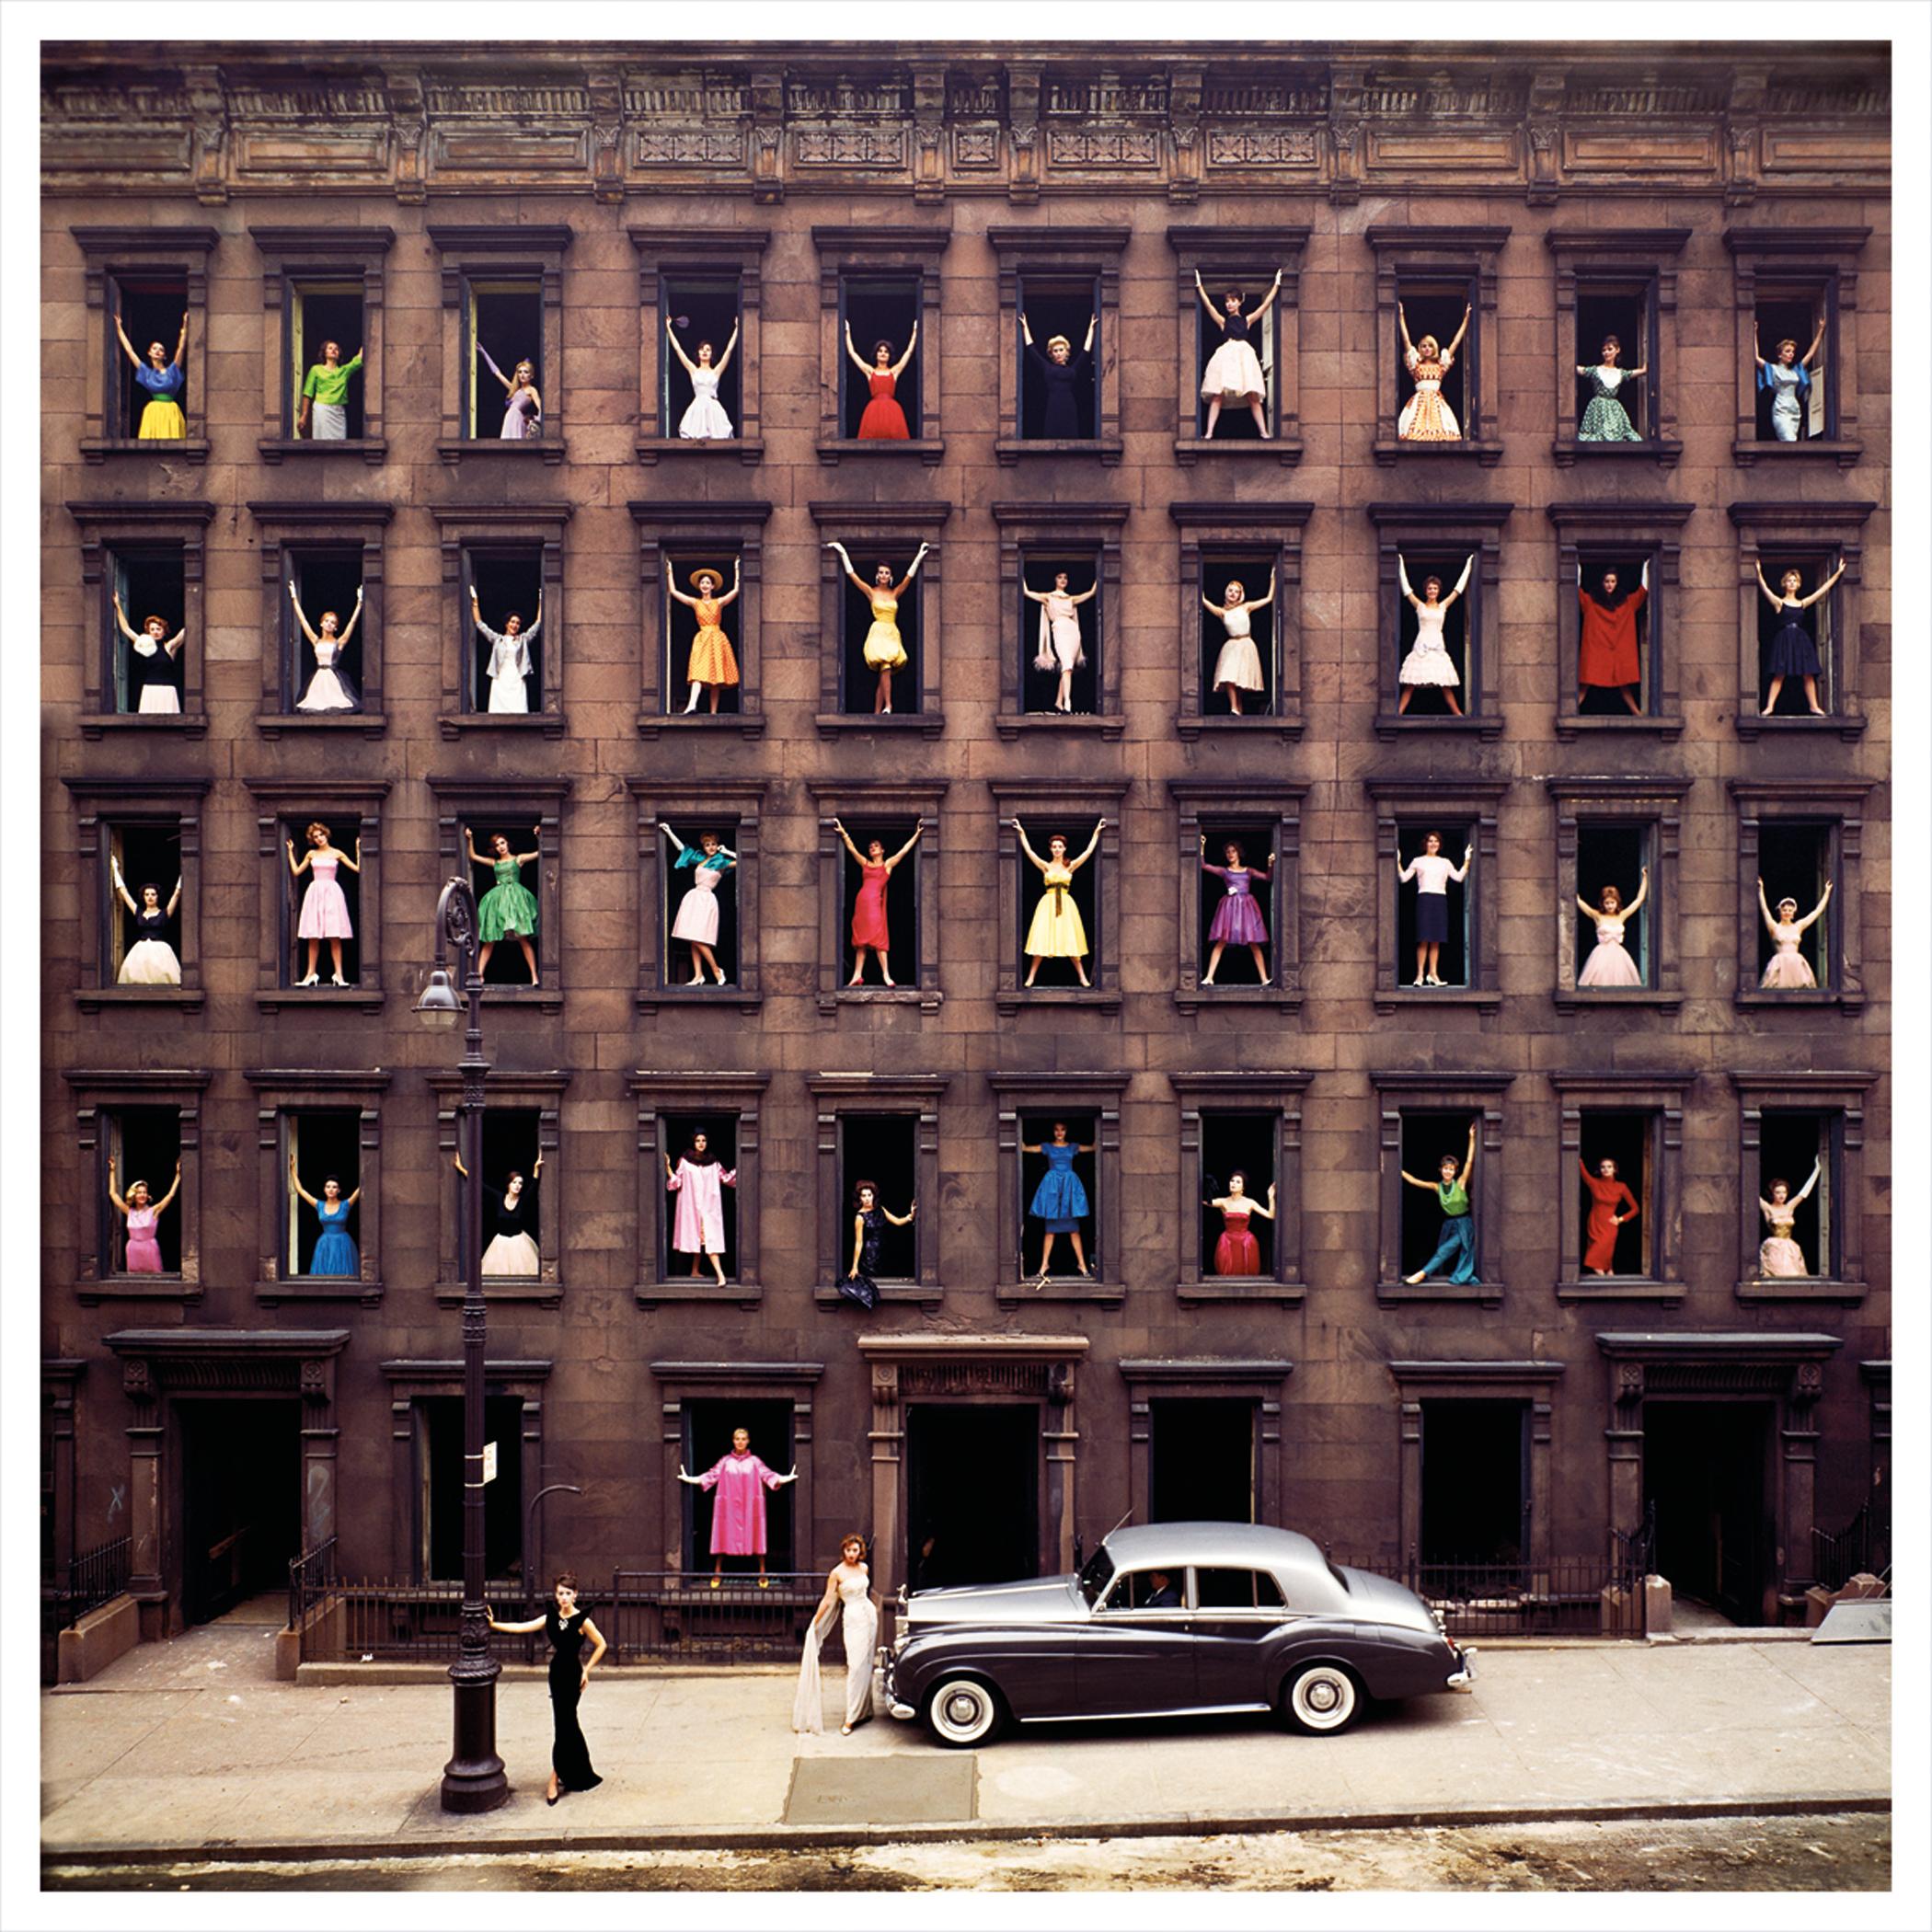 Ormond Gigli
Mädchen im Fenster, 1960 (später gedruckt)
Farbiger Kupplungsdruck
60 x 60 Zoll
Auflage von 4
Signiert, nummeriert und datiert vom Künstler

Ormond Gigli: Der Visionär hinter den "Girls in the Windows"
Ormond Gigli ist ein hoch